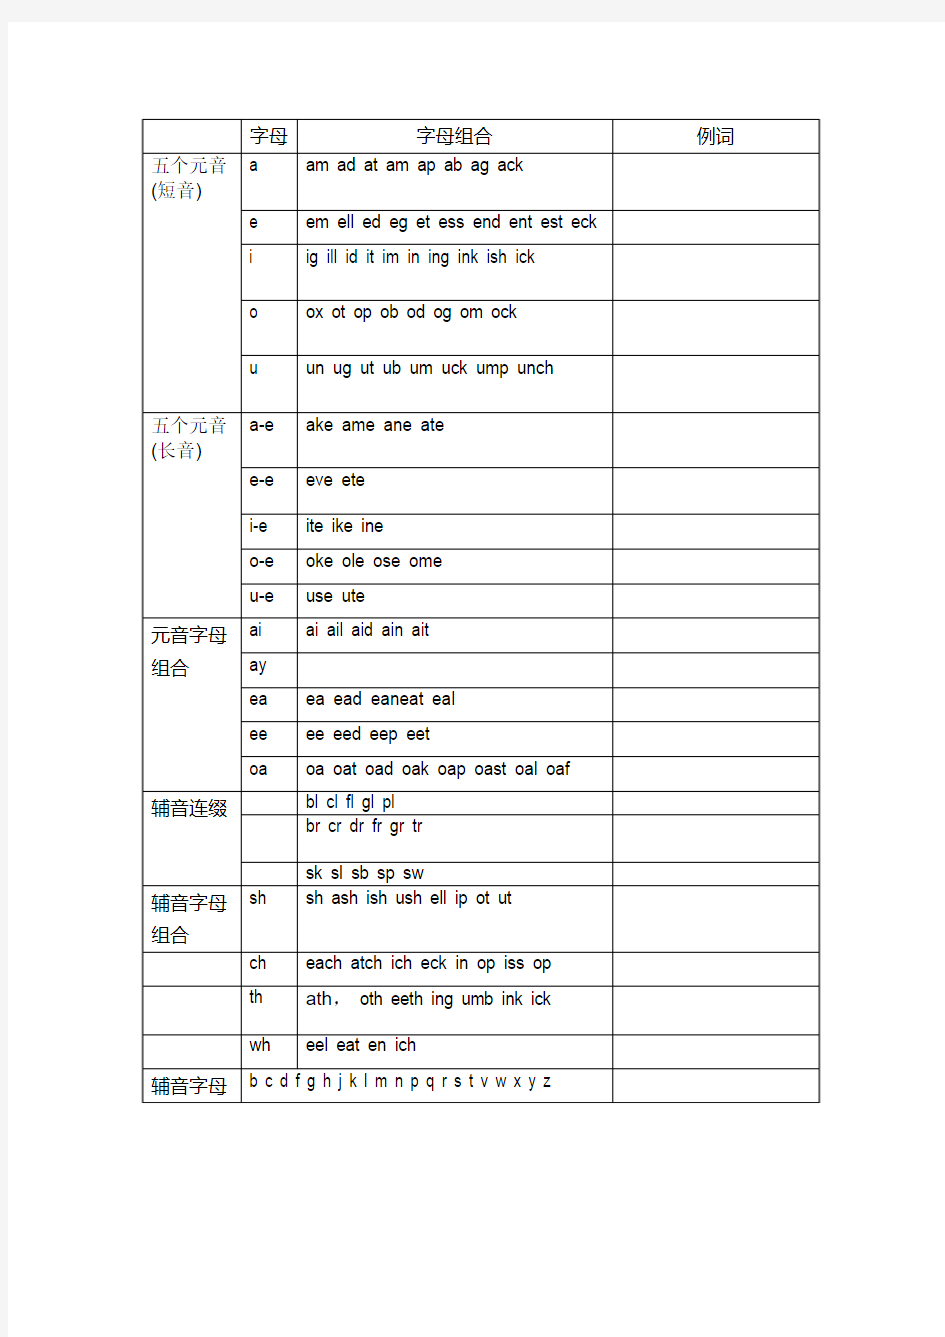 小学英语发音规则表